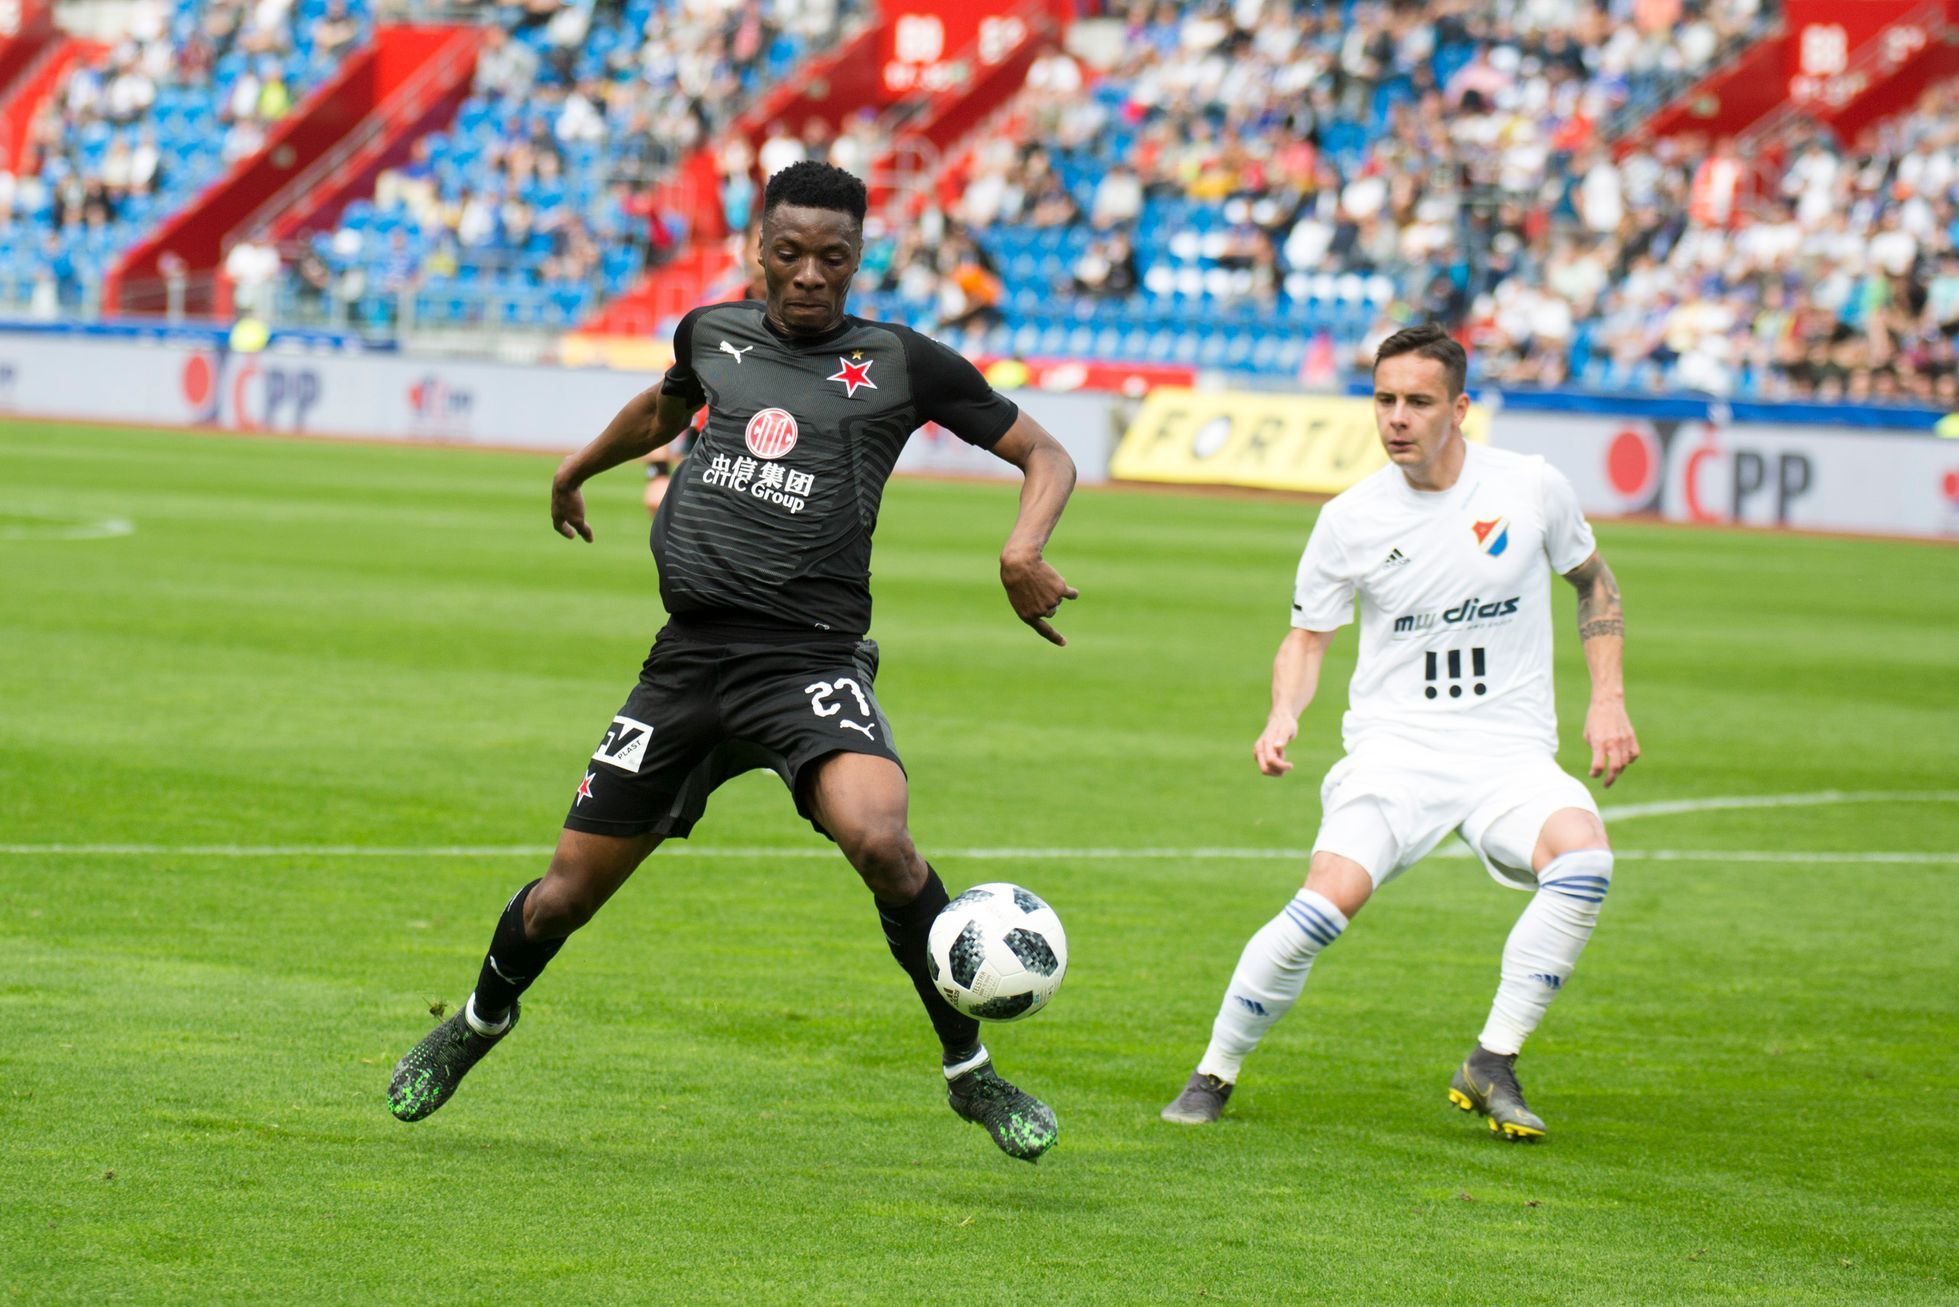 Ibrahim Traoré ve 4. kolo nadstavby Fortuna:Ligy Baník - Slavia